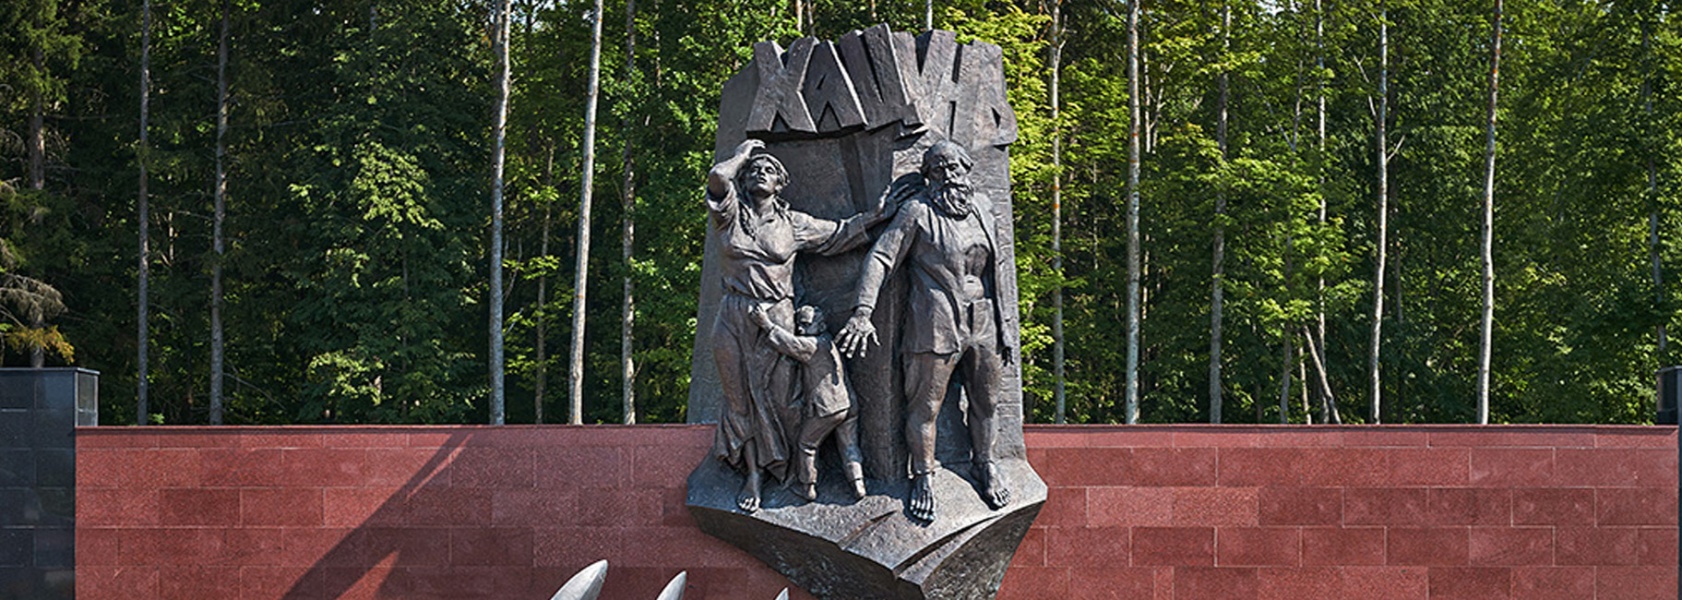 Мемориальный комплекс Хацунь, Карачевский район